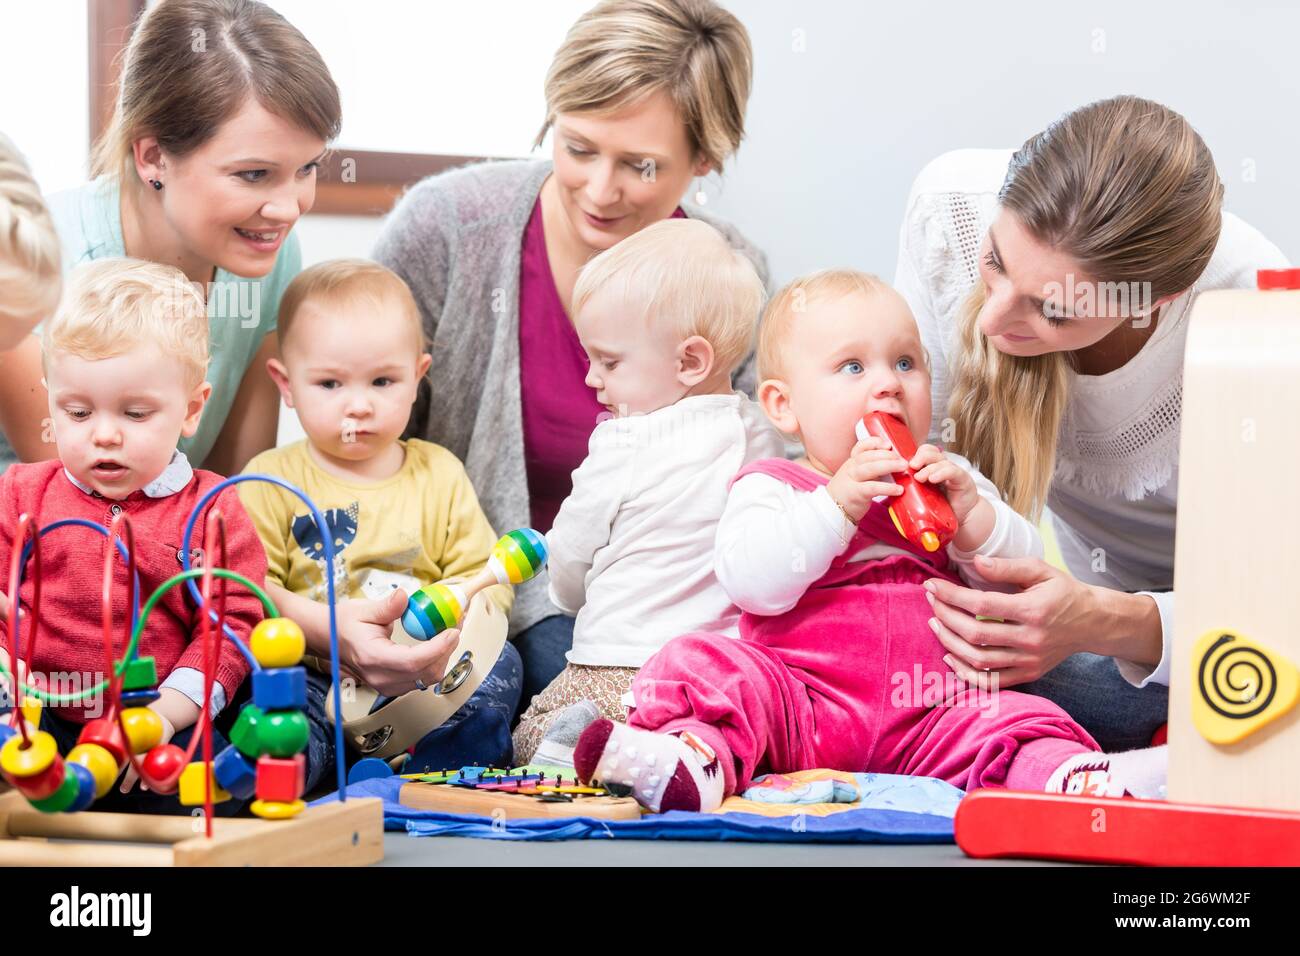 Drei engagierte und glückliche junge Mütter sitzen zusammen auf dem Boden, während sie ihren Babys beim Spielen mit sicheren bunten Spielsachen in einer modernen pla zusehen Stockfoto